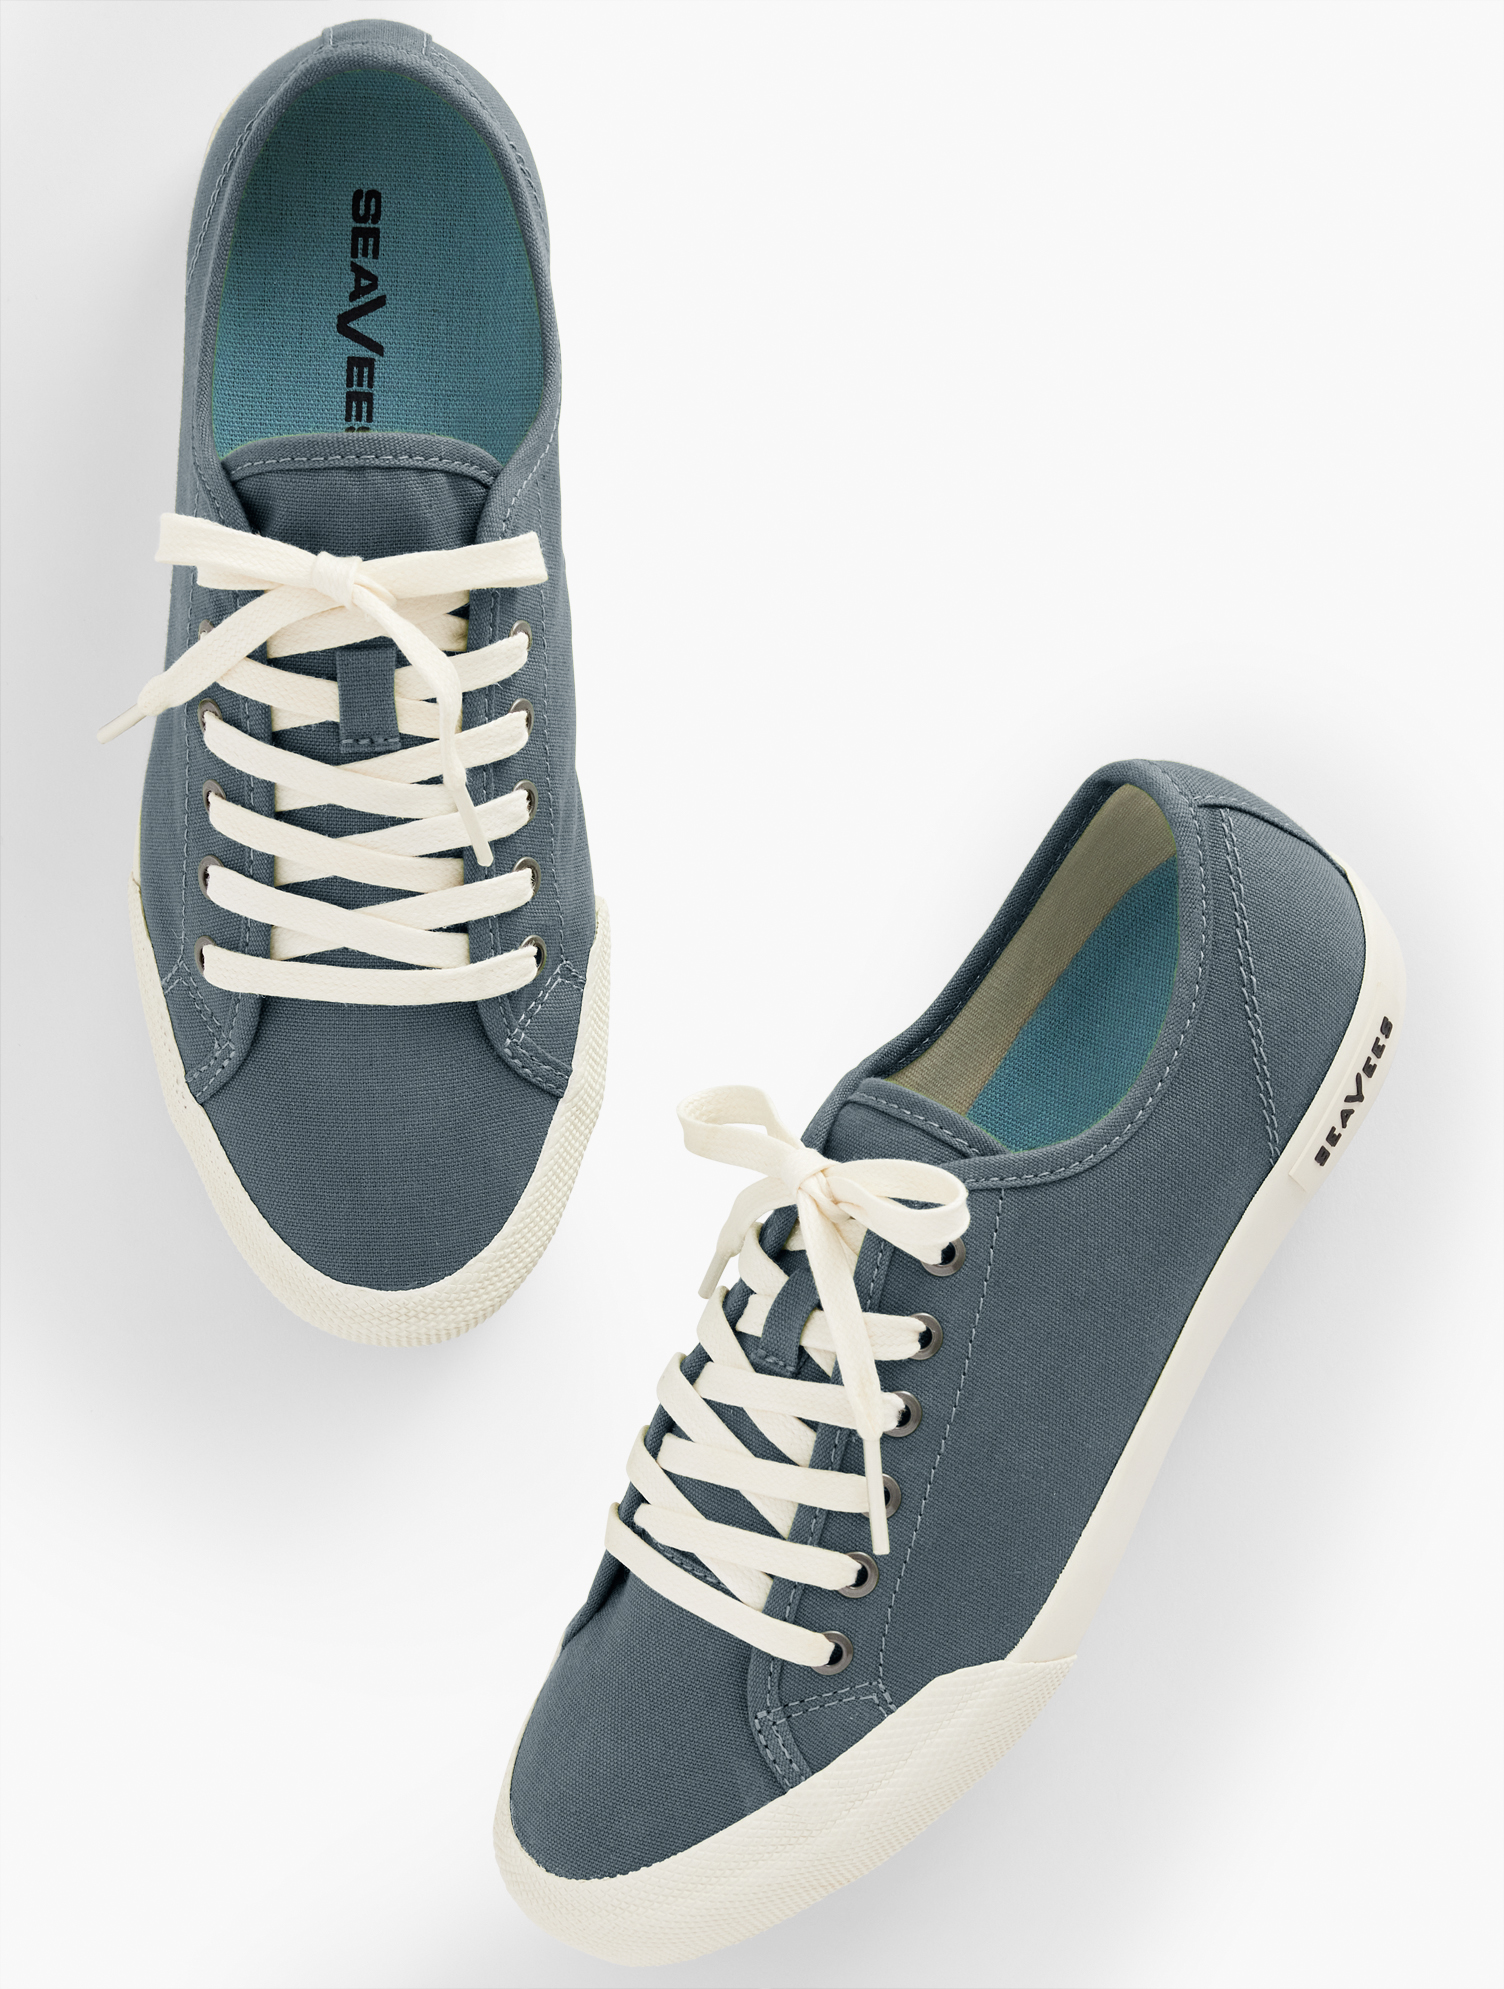 Talbots Seaveesâ¢ Monterey Classic Canvas Sneakers - Slate Navy Blue - 10m